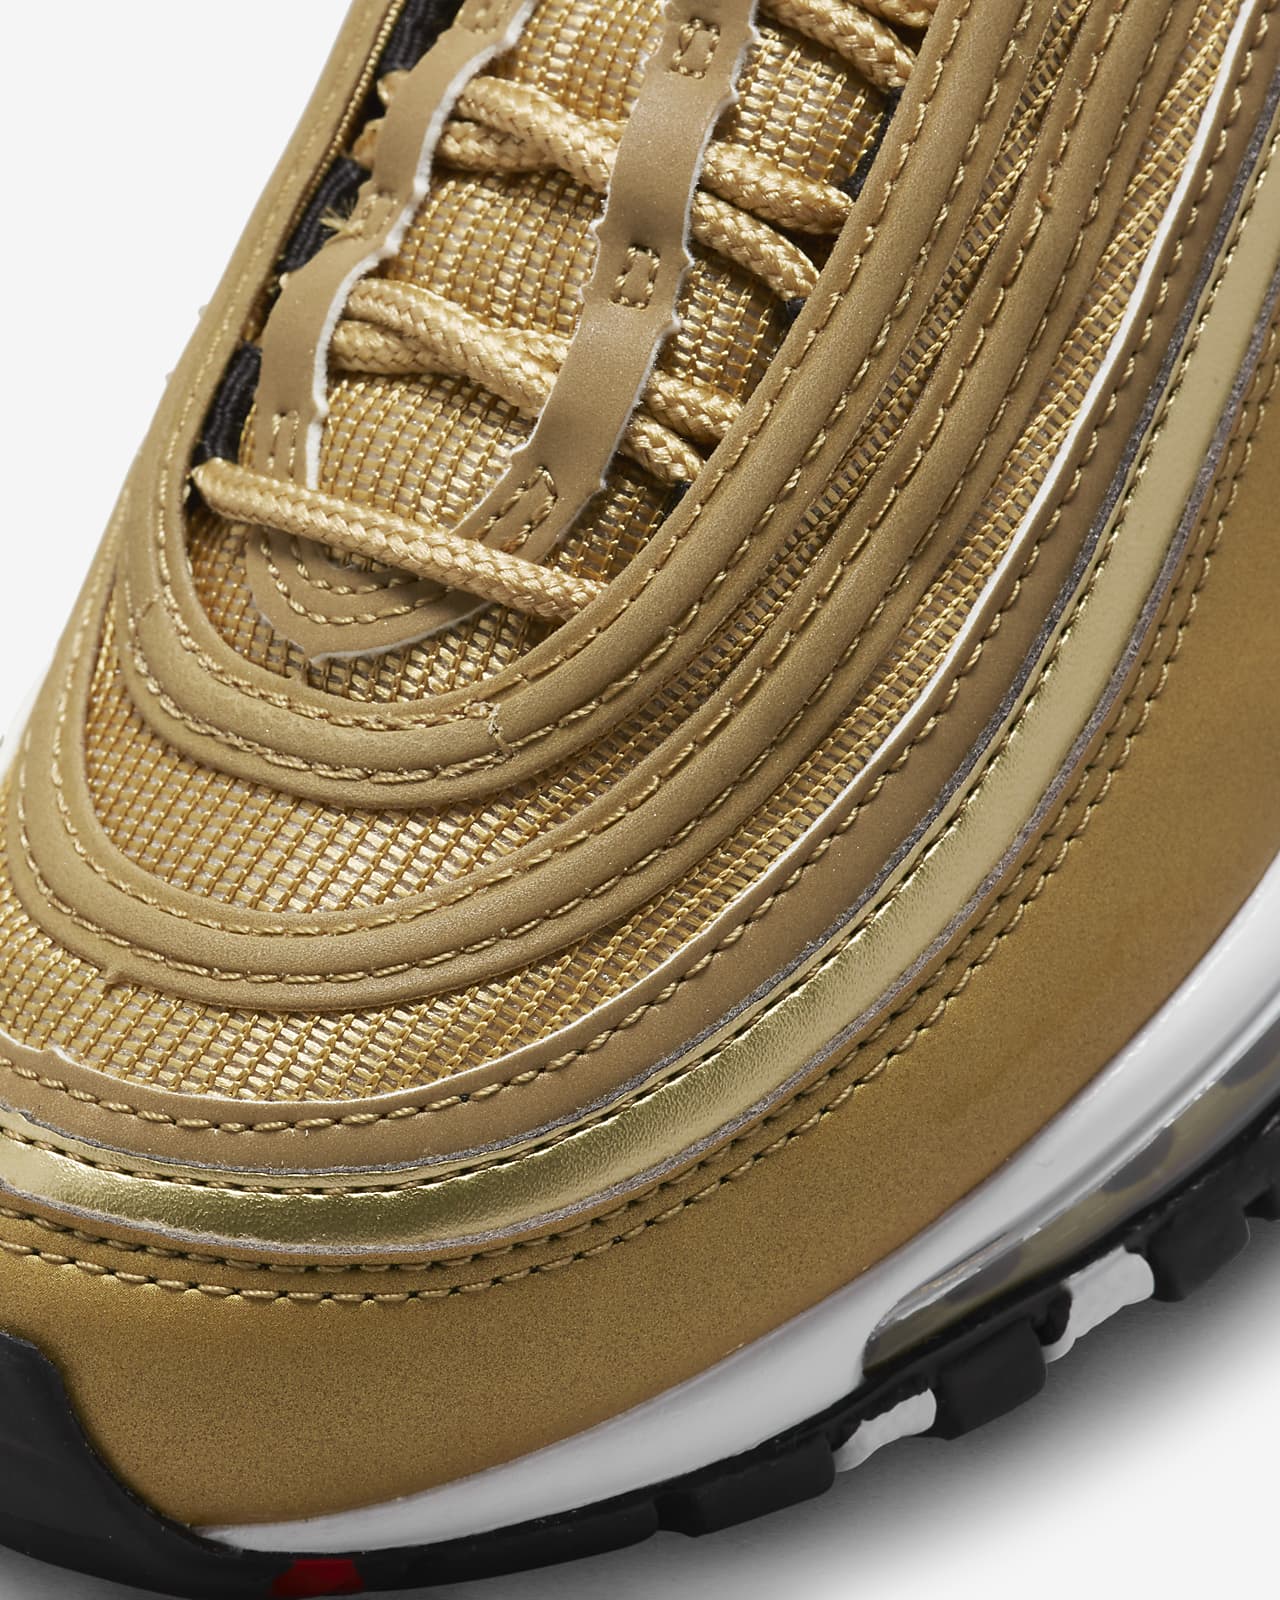 Sneaker Review: Nike Air Max 97 in Metallic Gold